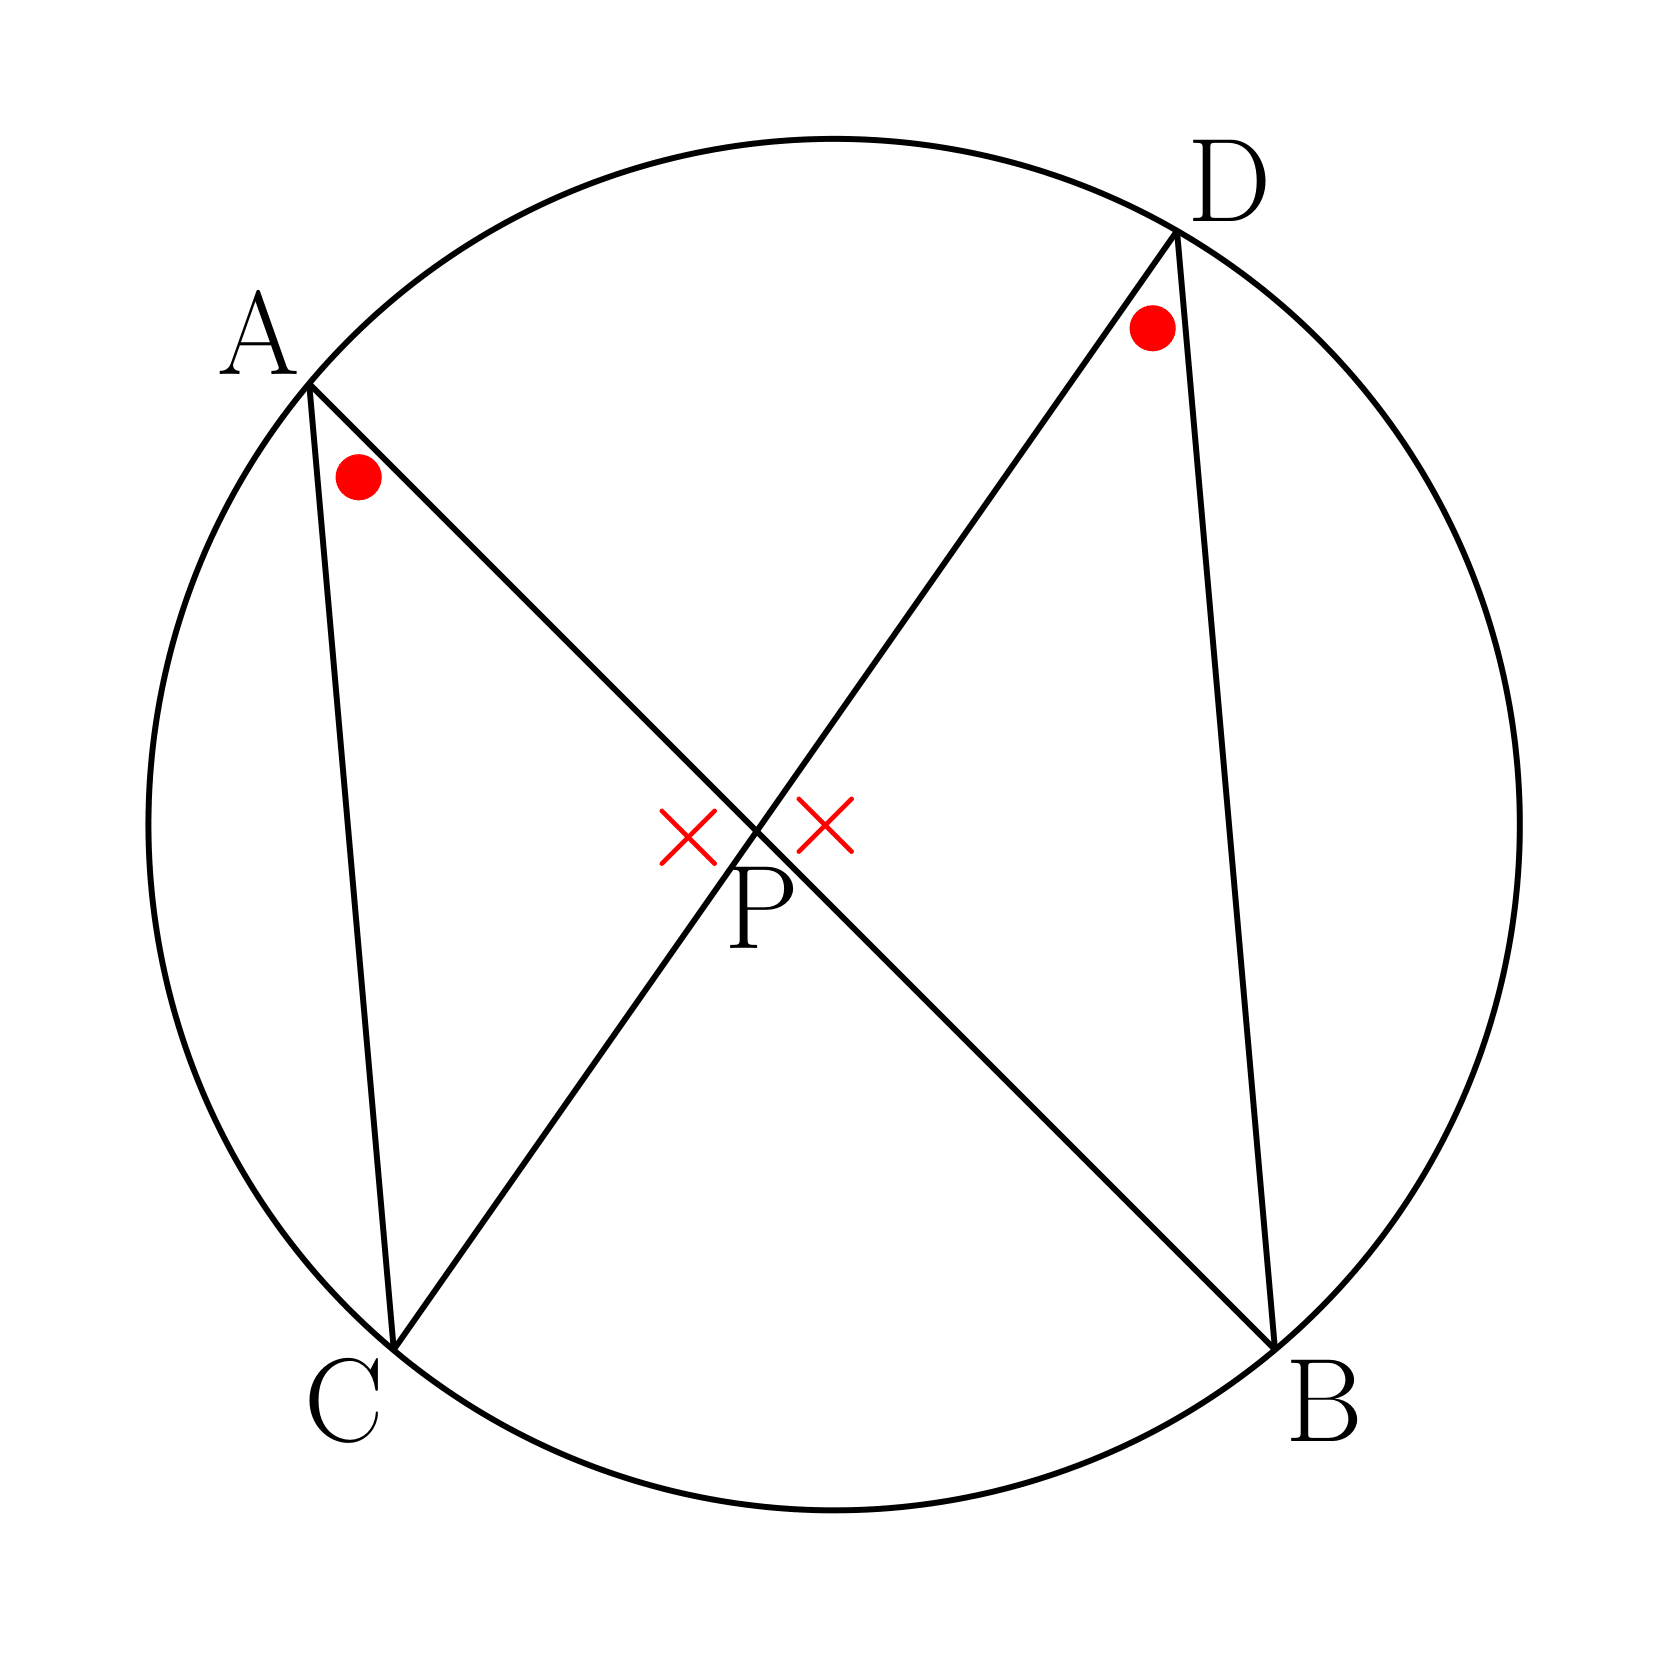 方べきの定理1の証明の図